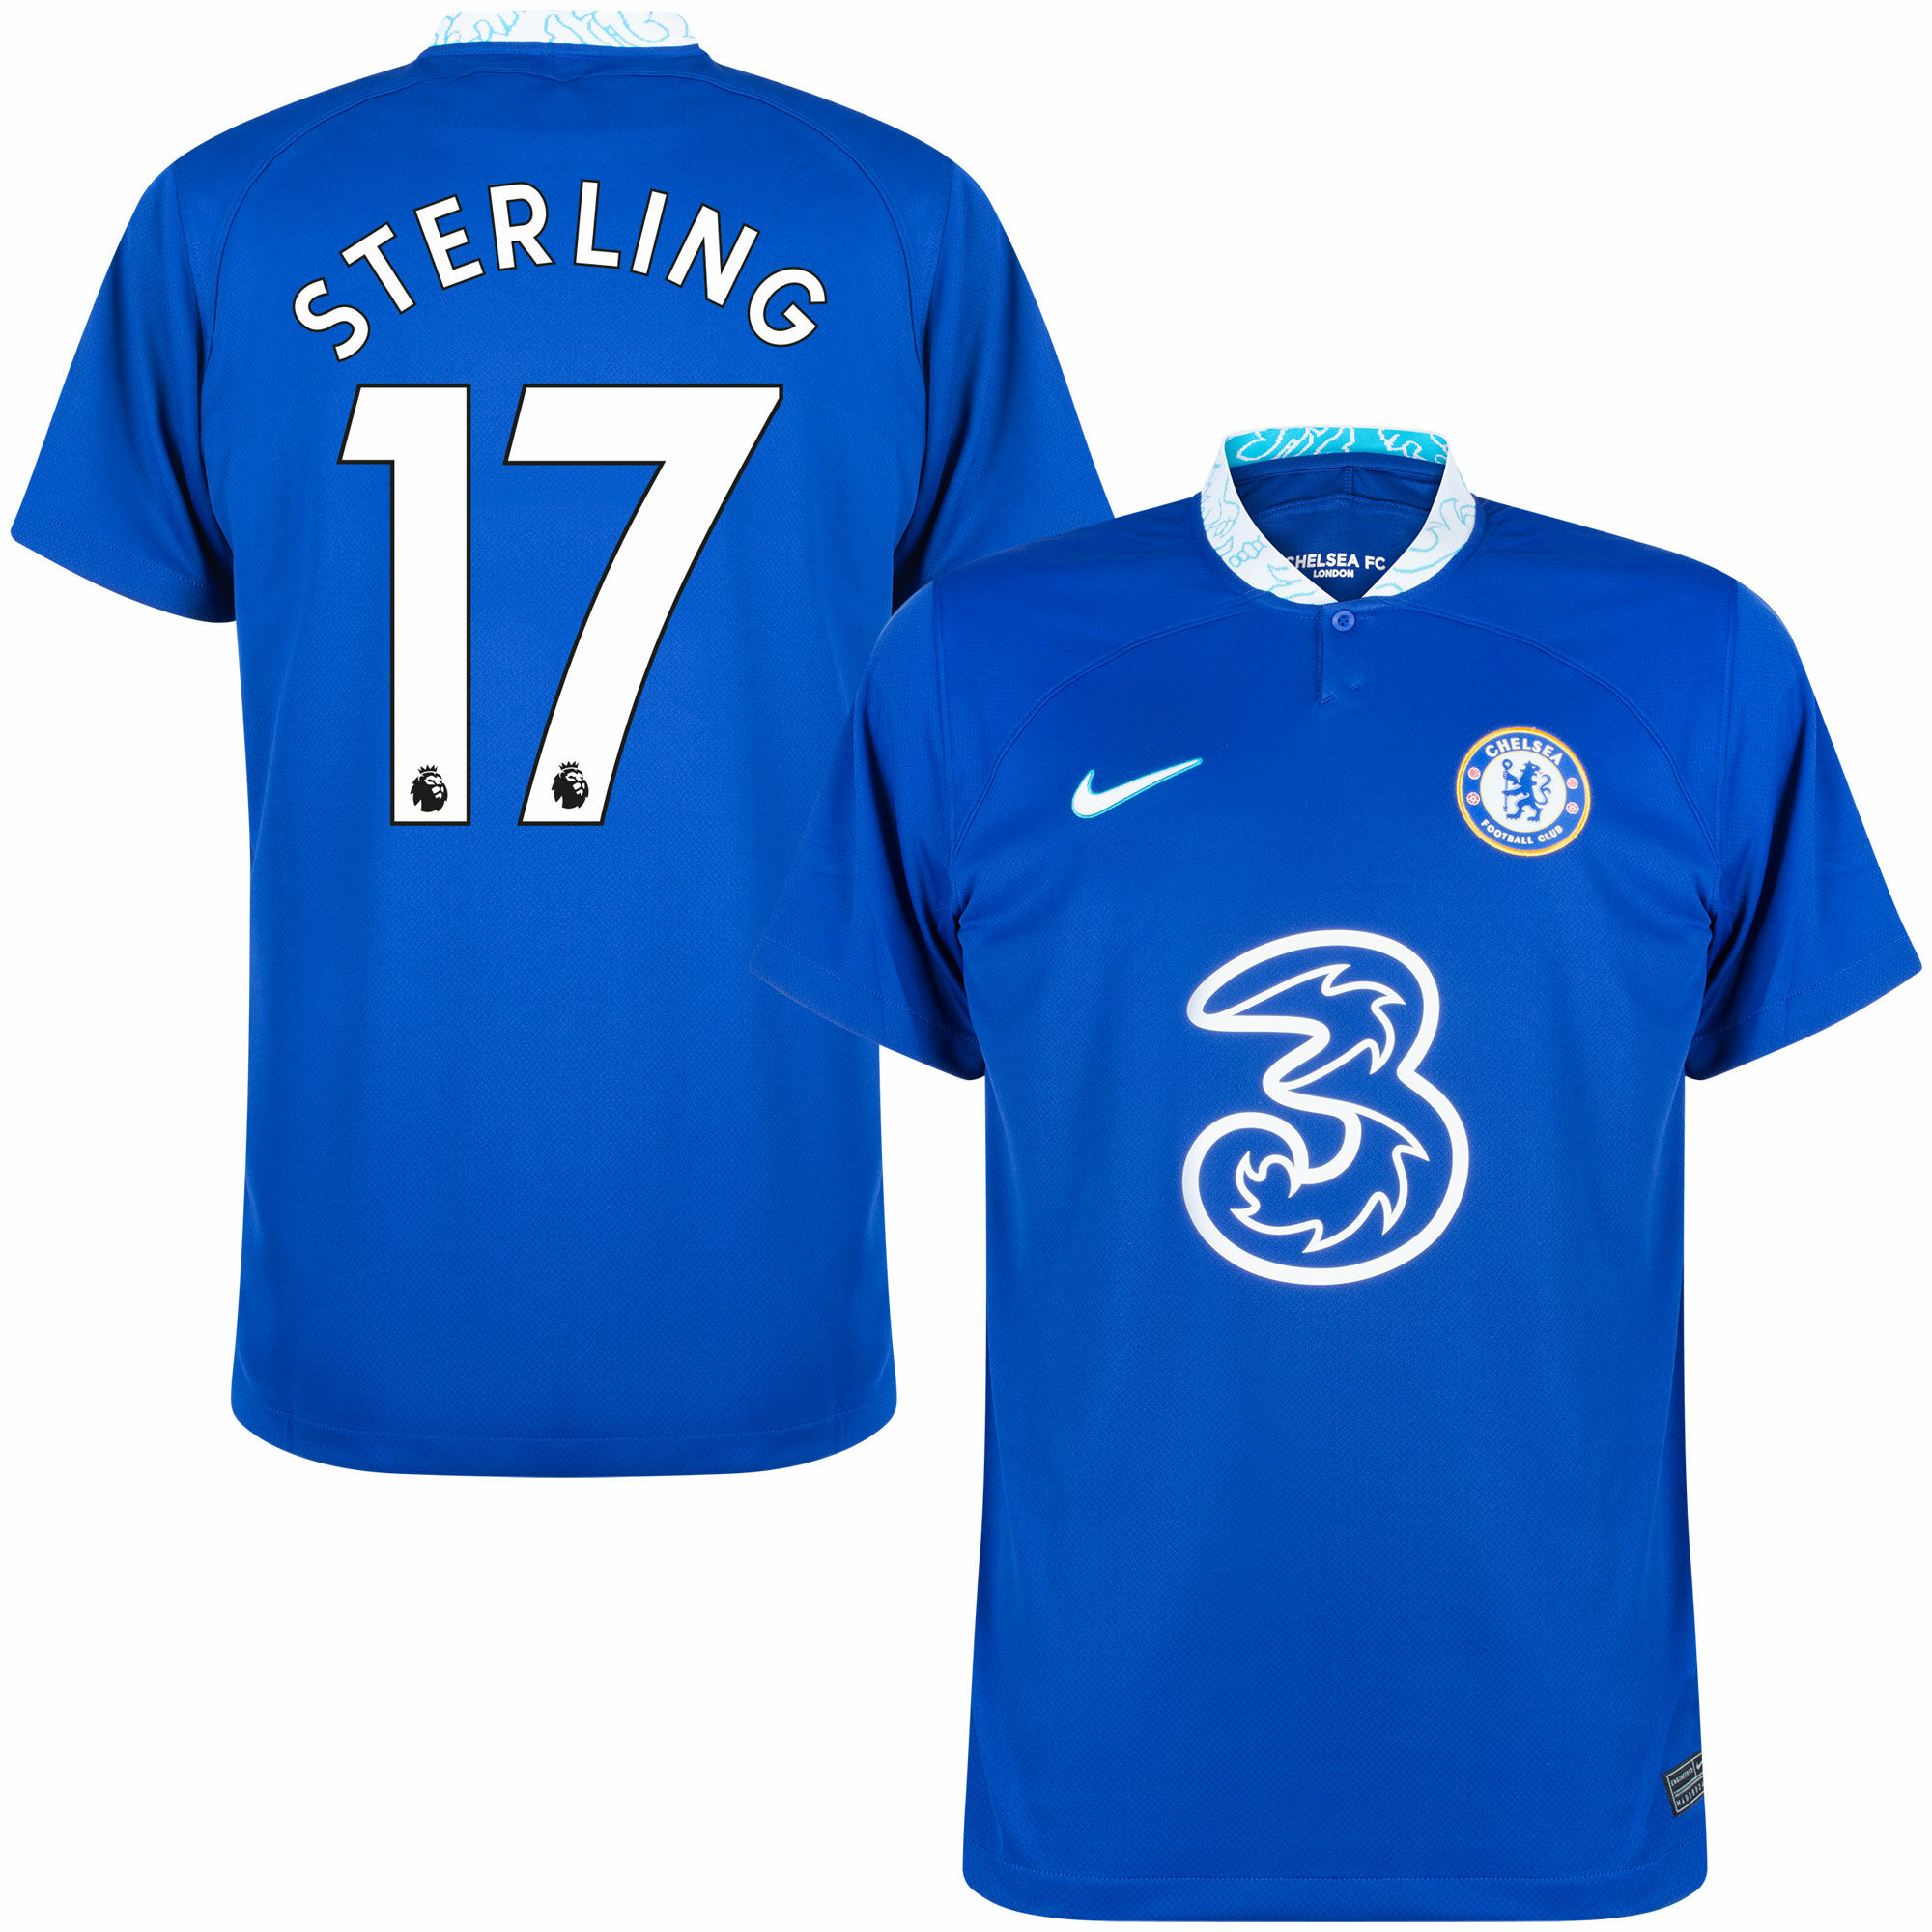 Chelsea - Dres fotbalový - číslo 17, Raheem Sterling, Premier League, domácí, sezóna 2022/23, modrý